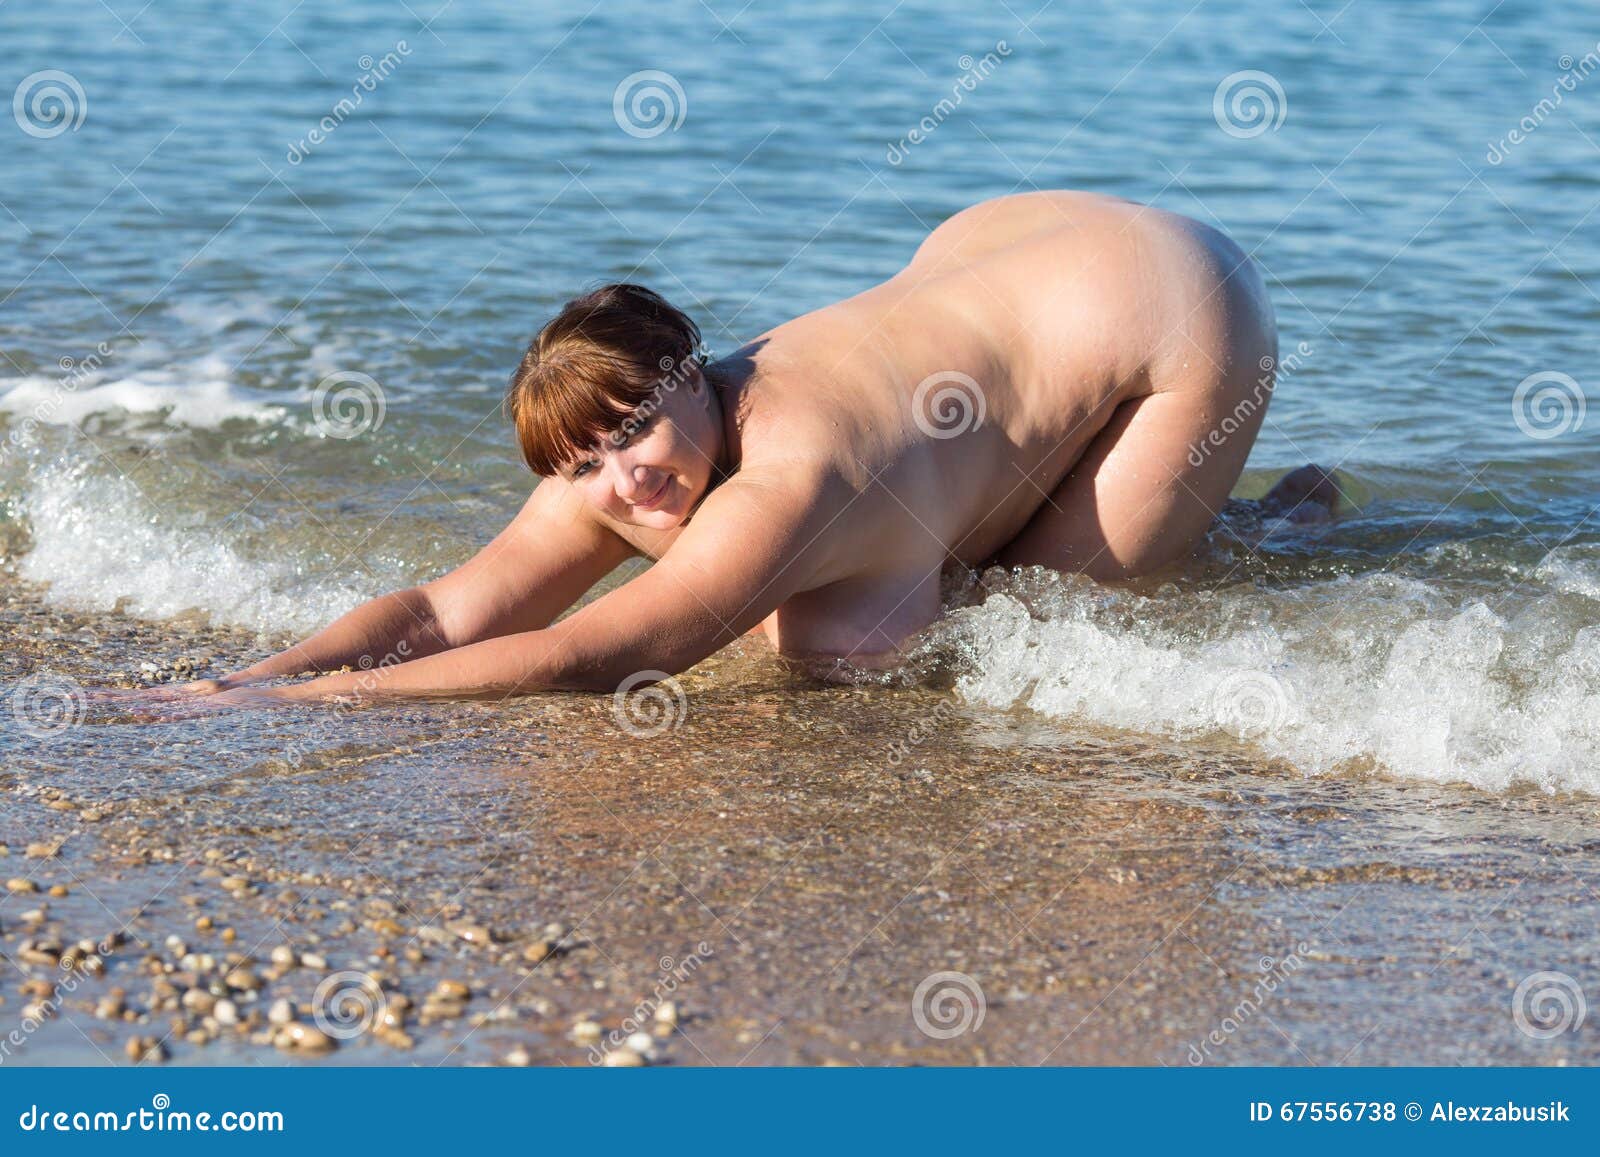 La Mujer Gorda Desnuda Se Arrodilla En El Borde De Las Aguas Foto de archivo